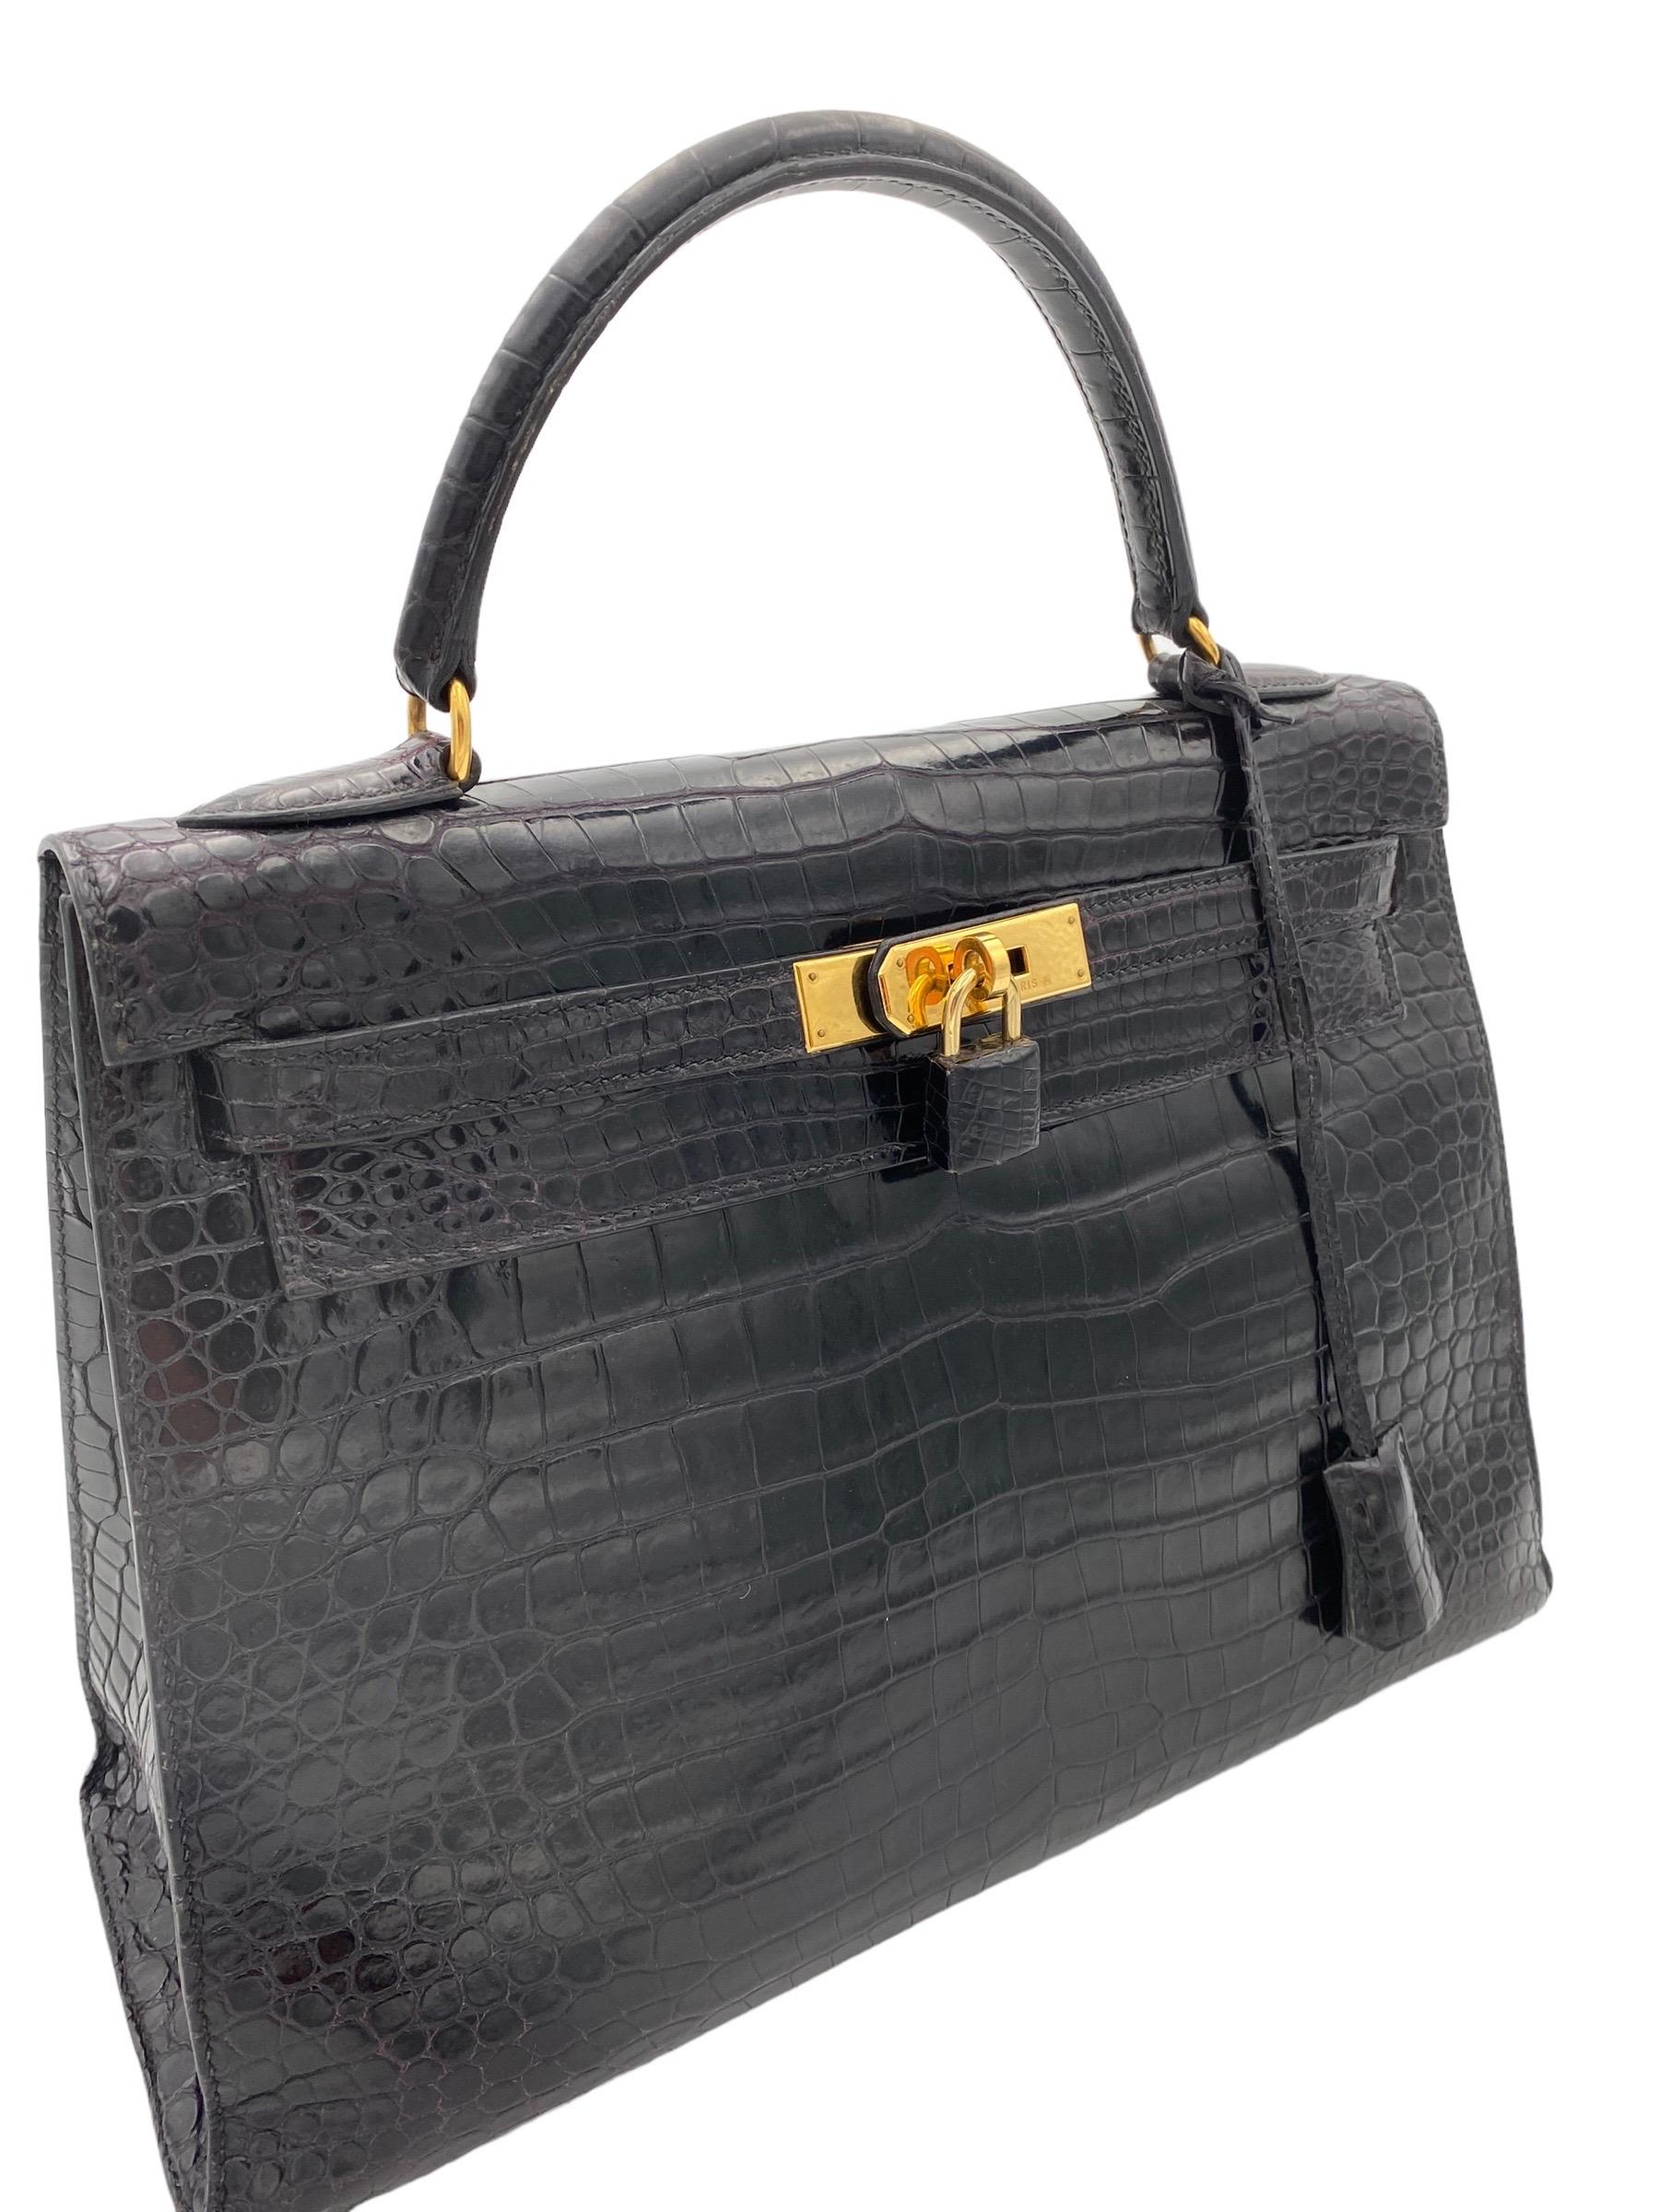 1998 Hermès Kelly 32 Black Leather Top Handle Bag 6